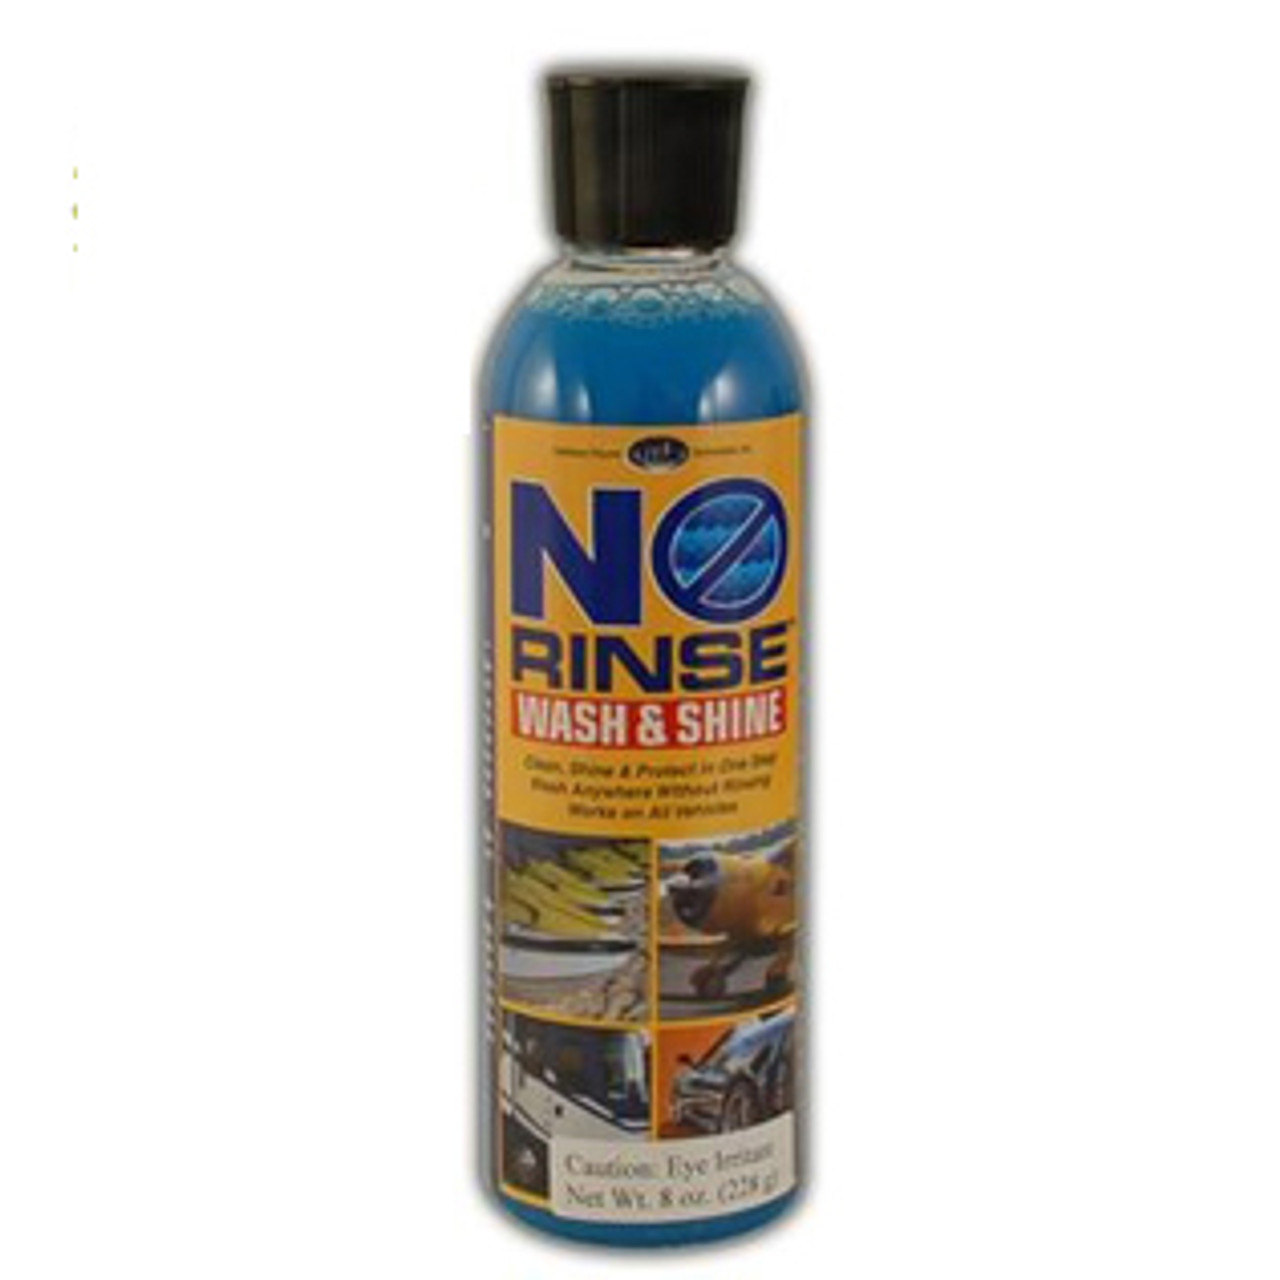 How To Use A Rinseless Wash, no rinse car wash, Optimum No Rinse Wash &  Shine, Detailer's Pro Series Rinseless Wash & Gloss, ONR